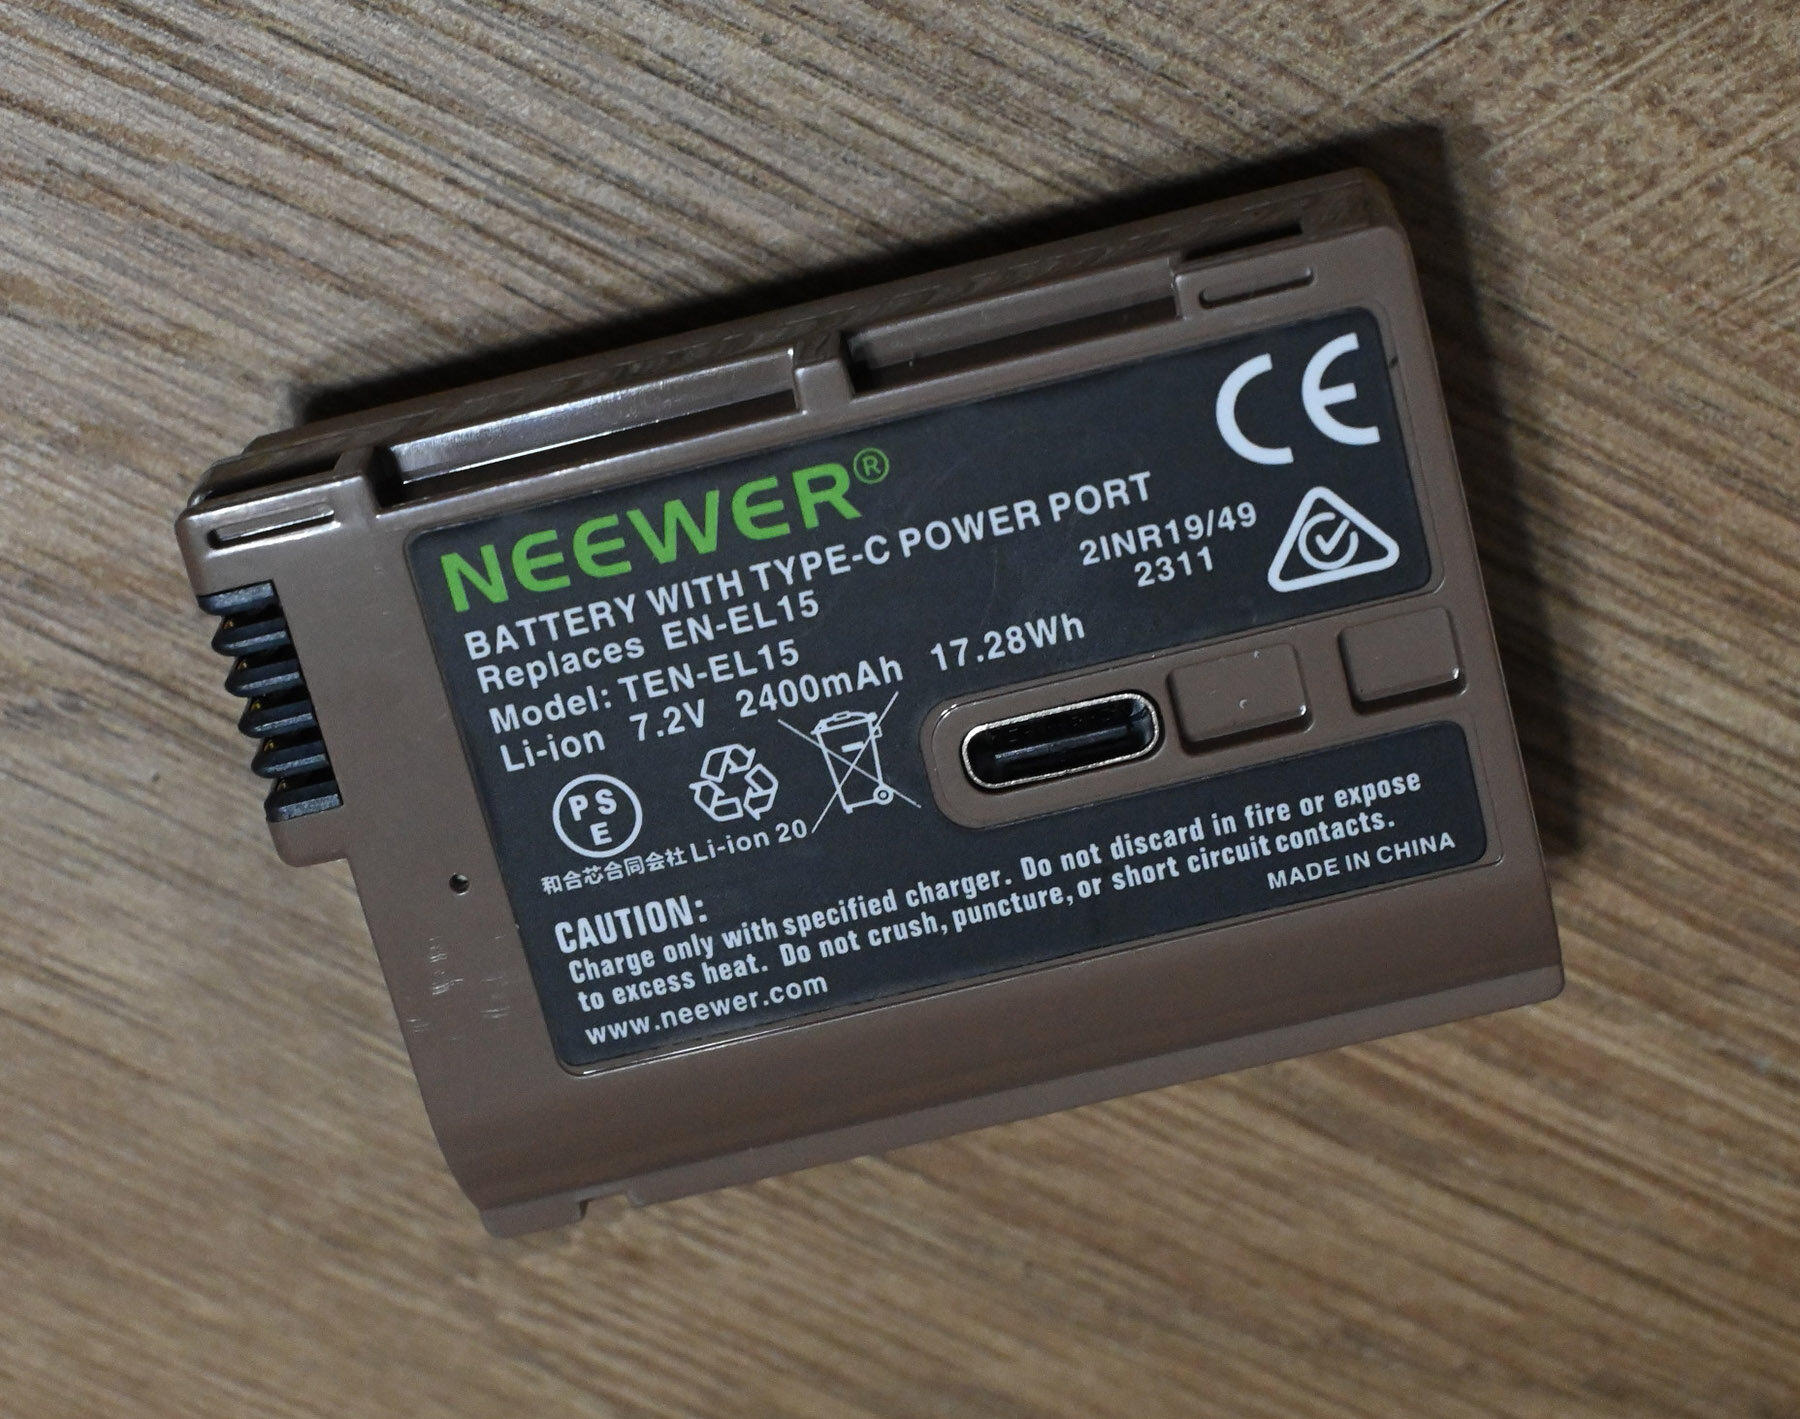 Maggiori informazioni su "Batteria Neewer sostitutiva Nikon EN-EL15c"